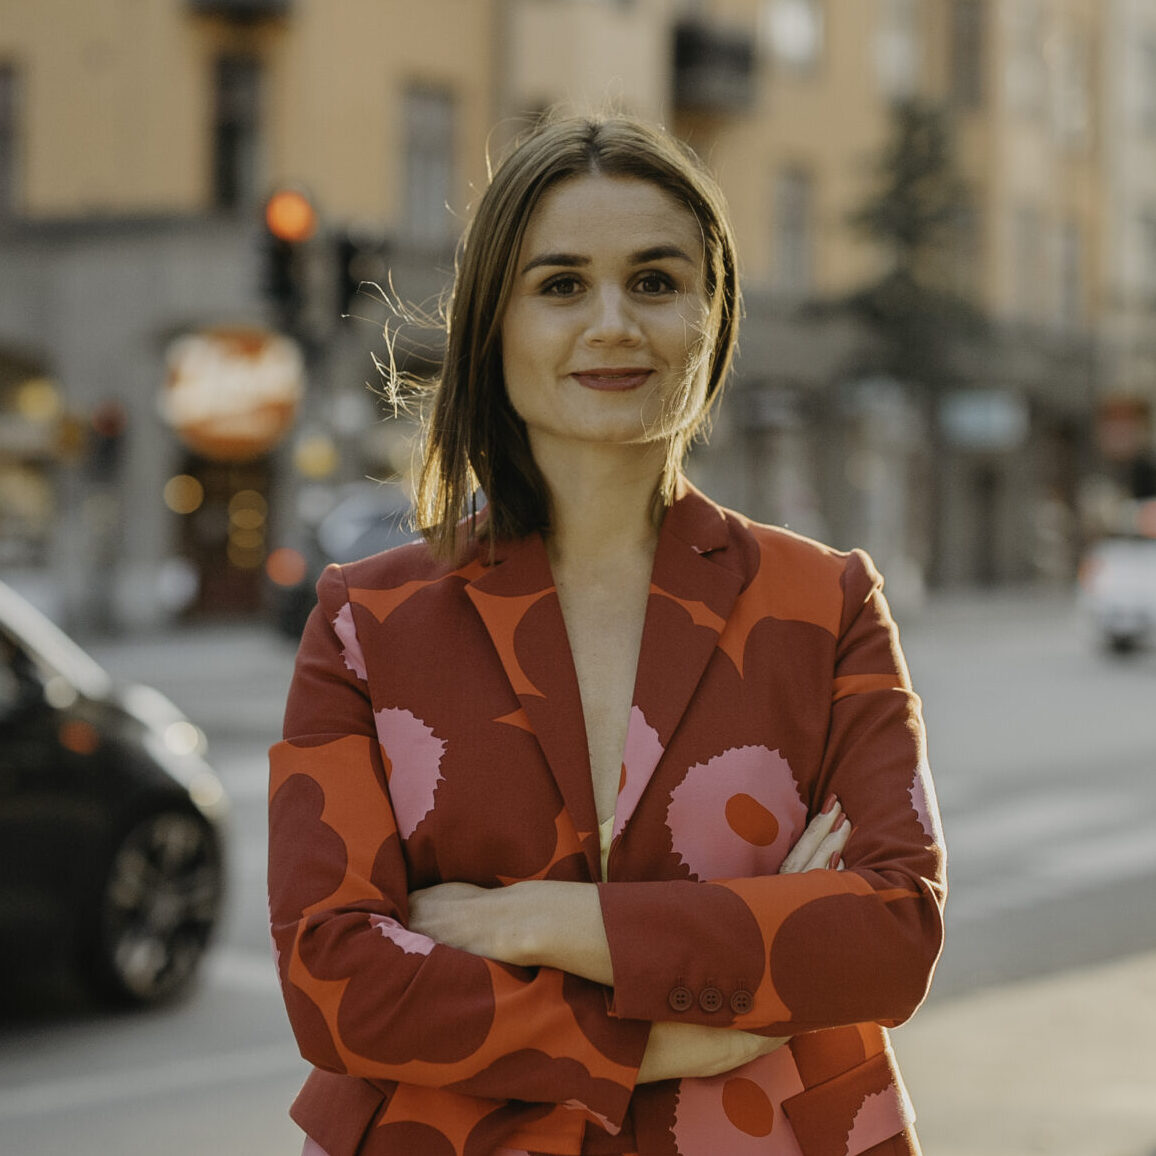 Årets moderator Paulina Modlitba inleder eFörvaltningsdagarna